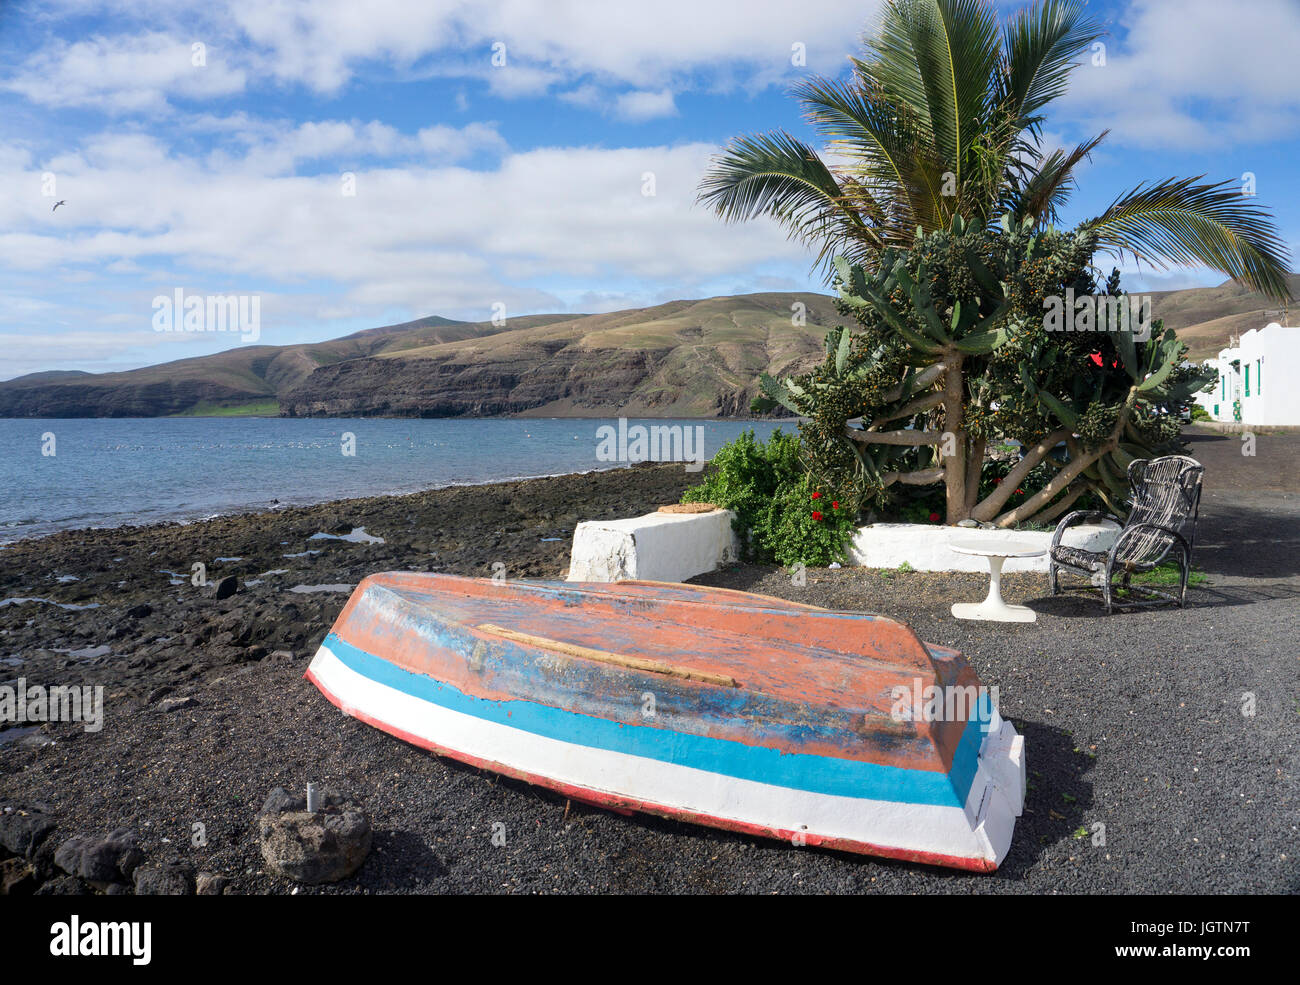 Des bateaux de pêche à la plage du village de pêcheurs de Playa Quemada, île de Lanzarote, Canary Islands, Spain, Europe Banque D'Images